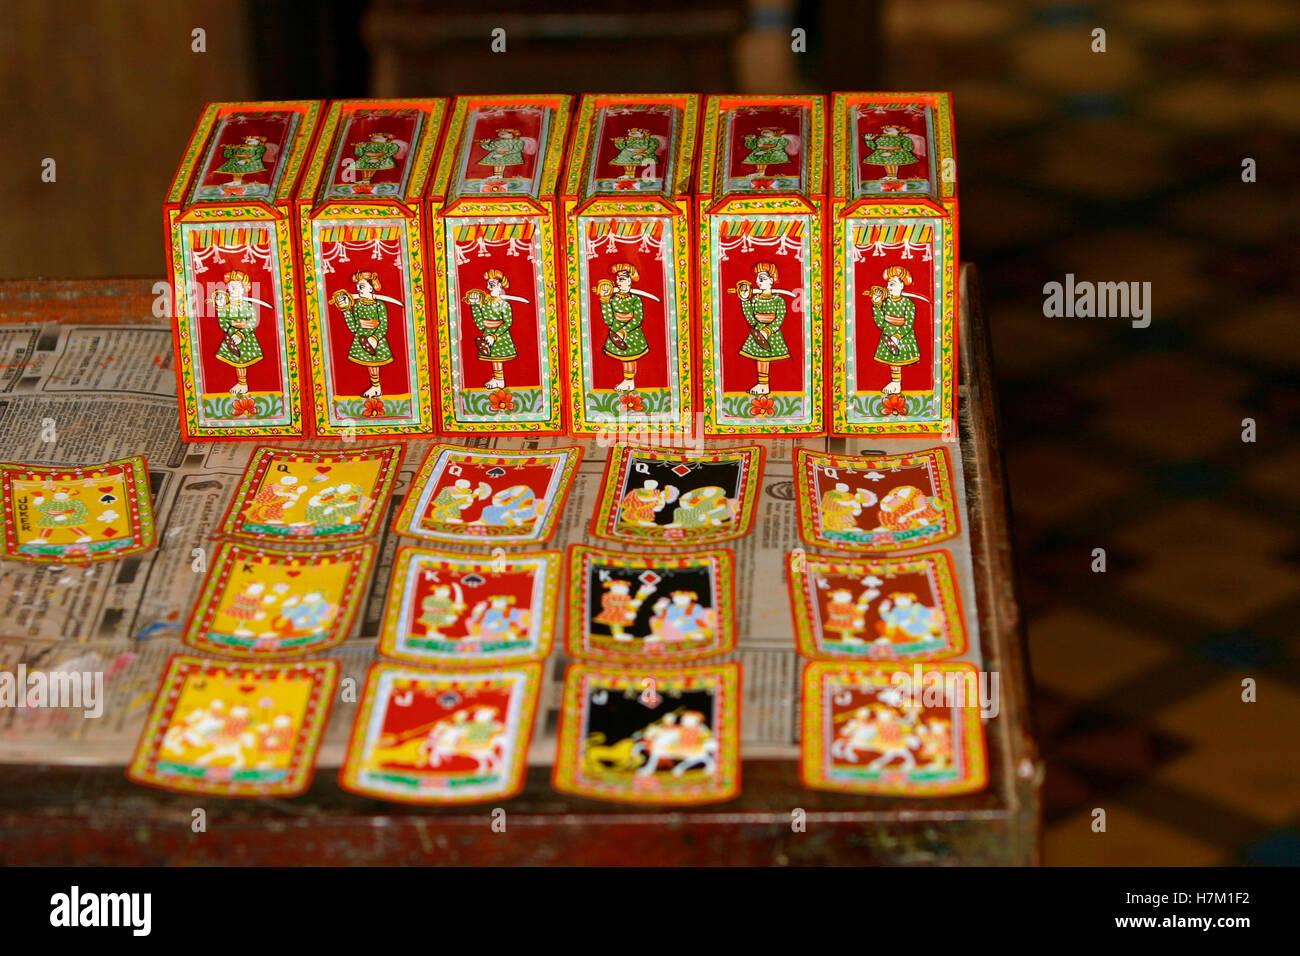 Handgefertigte Karten zu spielen. Diese sind einzigartig und handgefertigt und sind mit einem hohen Preis exportiert. Stockfoto